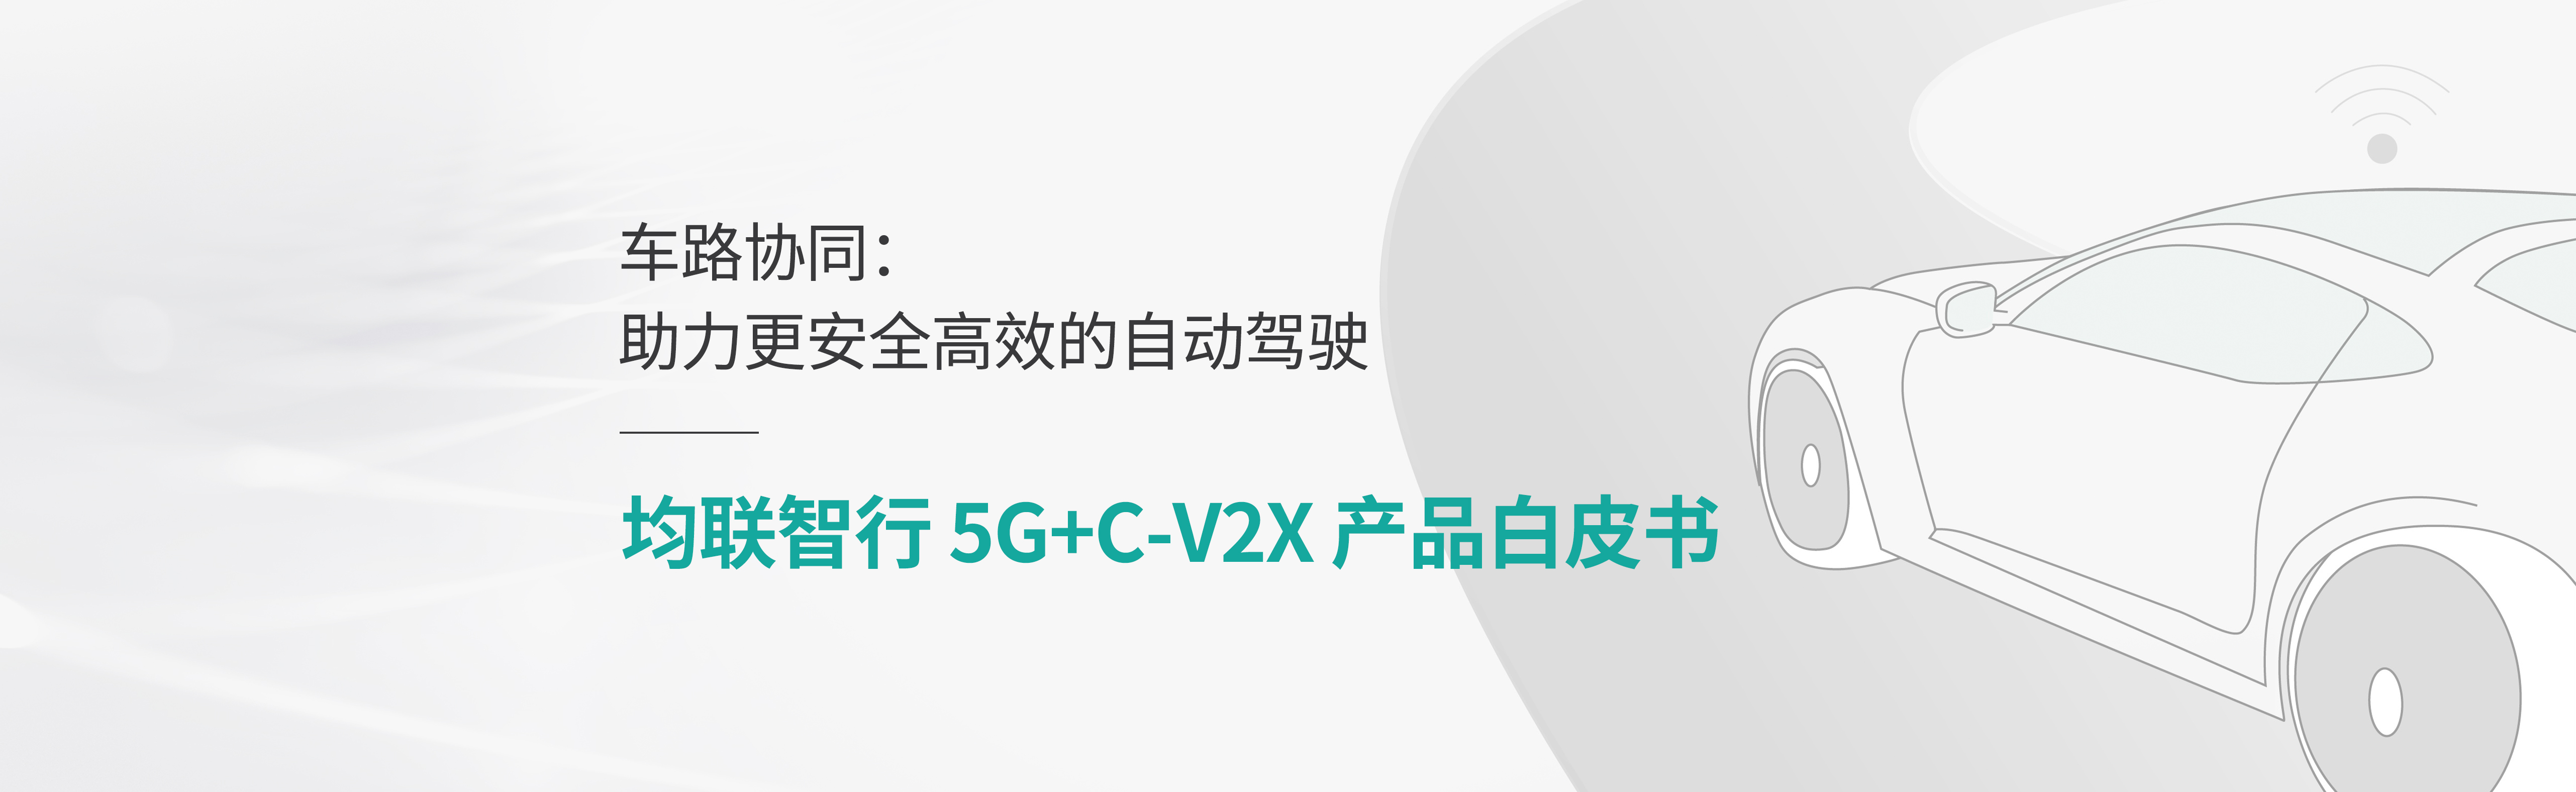 均联智行车路协同5G+C-V2X 产品白皮书发布